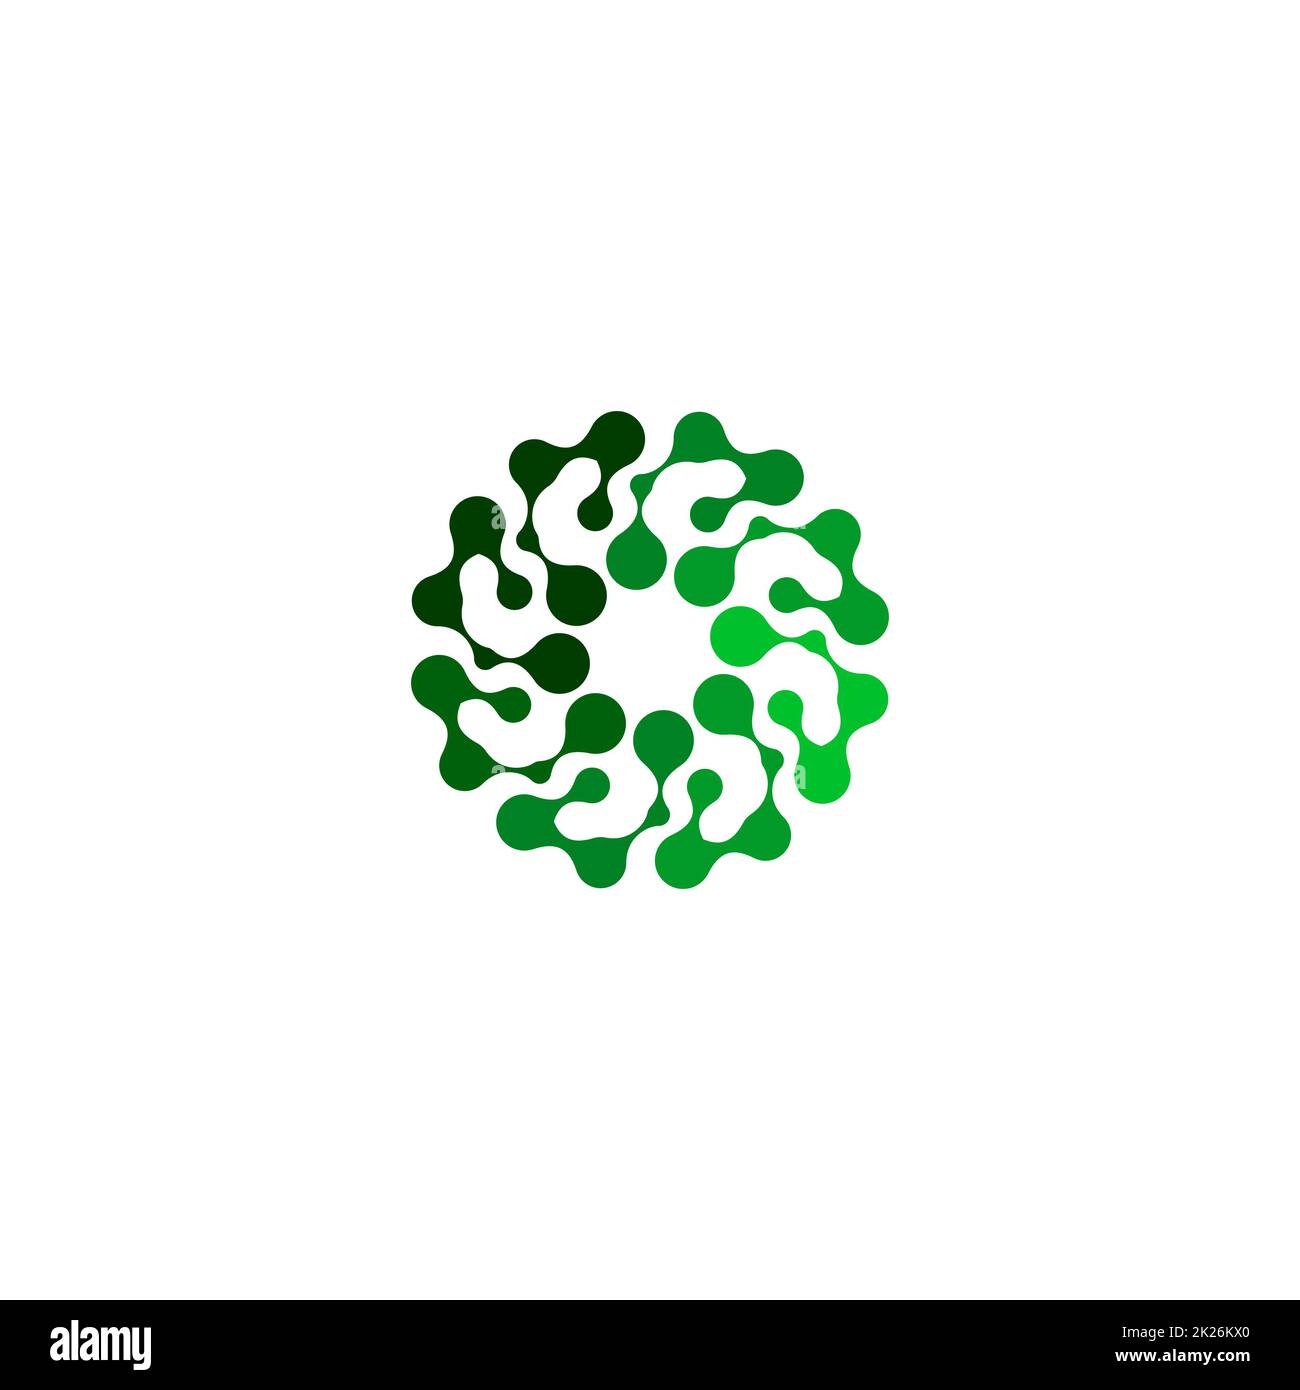 Isoliertes, abstraktes grünes, rundes Logo auf weißem Hintergrund, einfache, flache, stilisierte Blumenlogos als Vektordarstellung Stockfoto